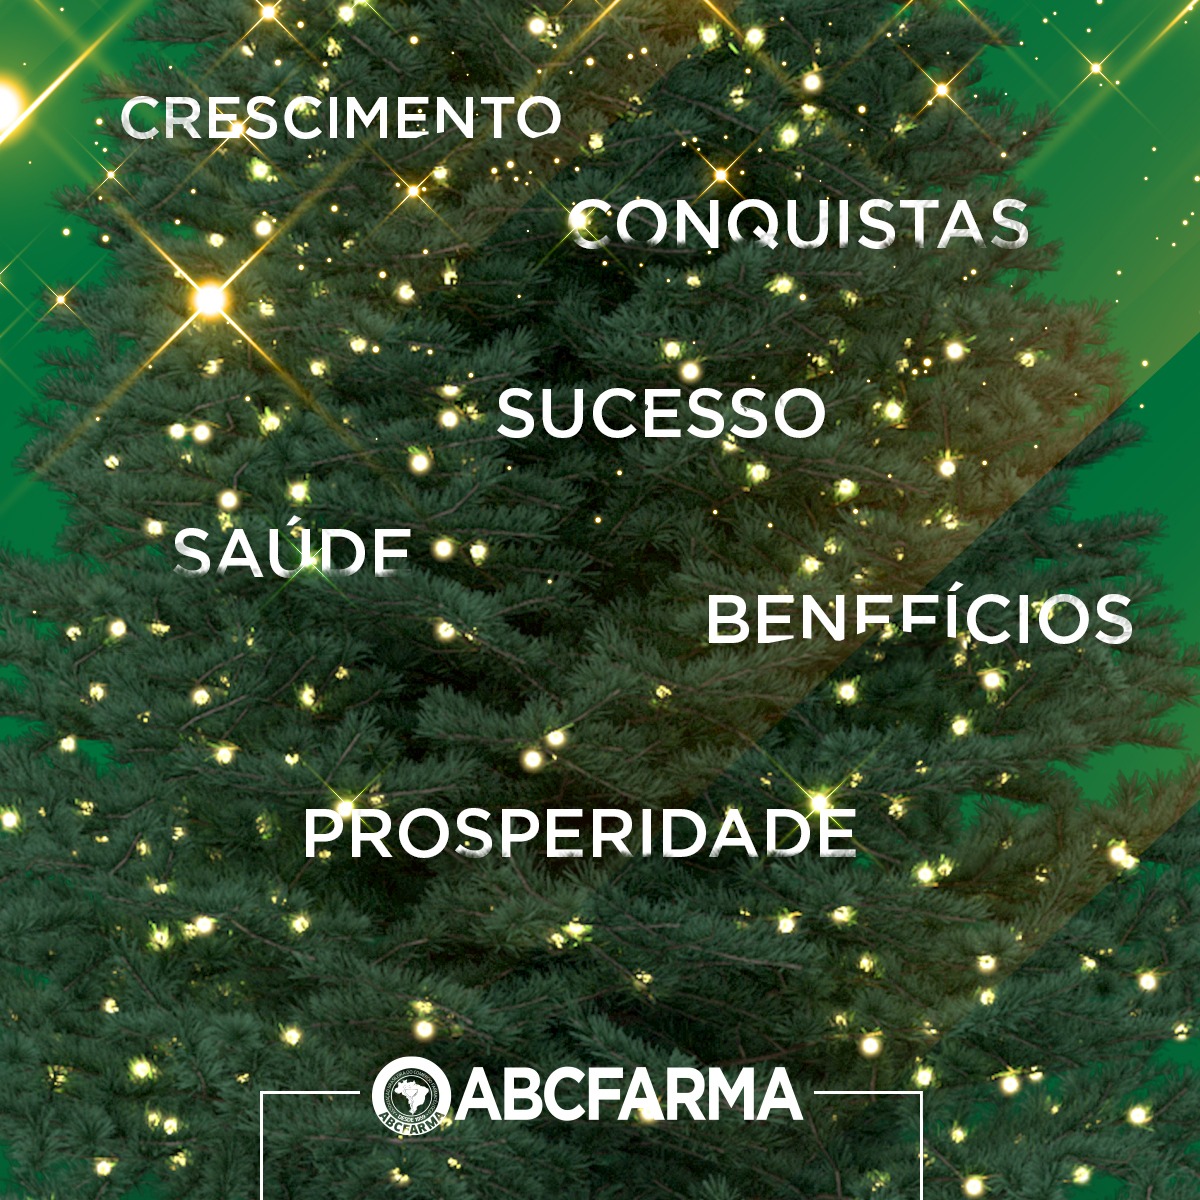 ABCFARMA deseja a todos um Feliz Natal e próspero Ano Novo - ABCFARMA